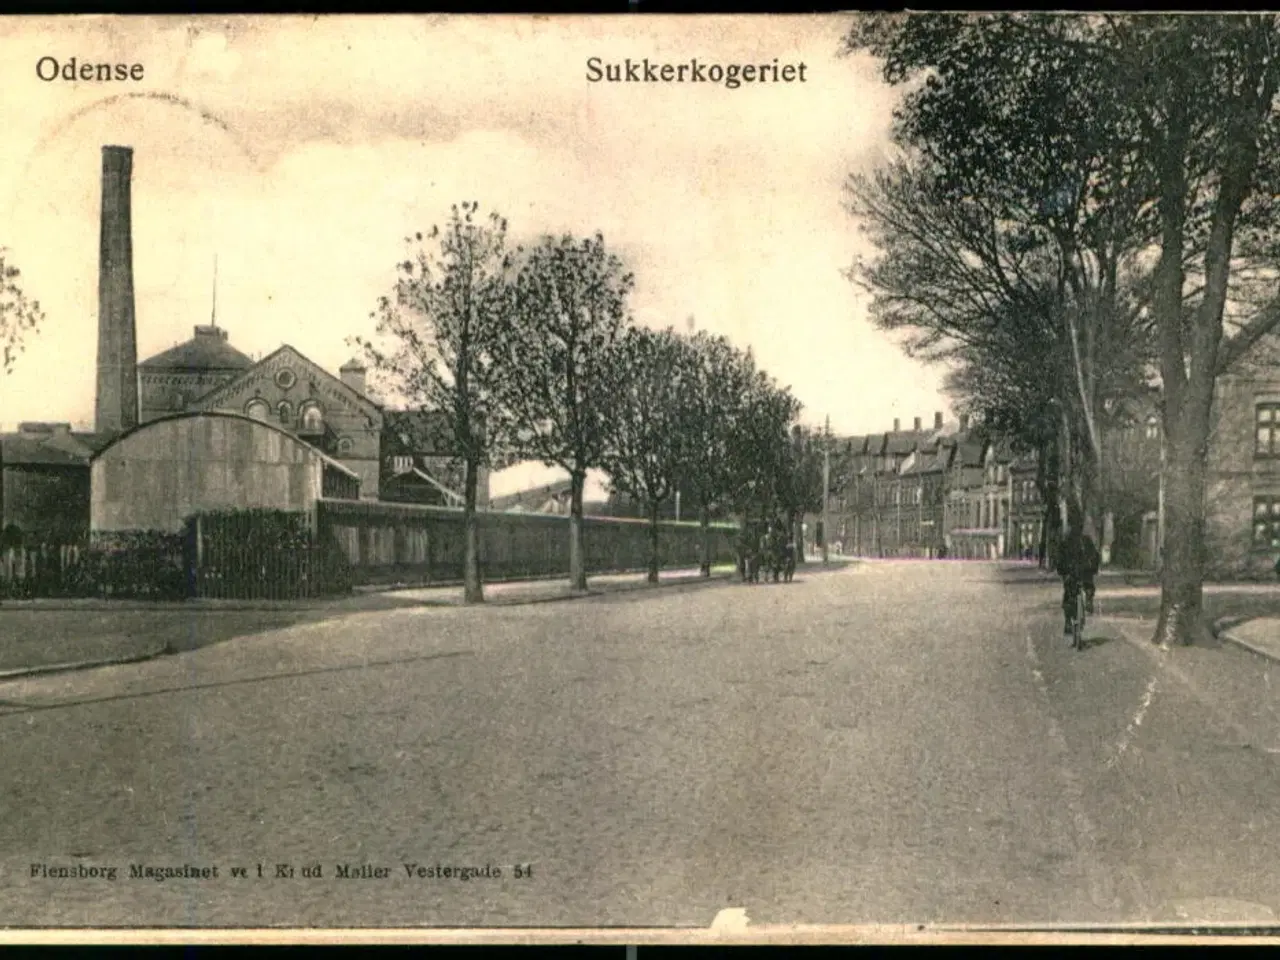 Billede 1 - Odense - Sukkerkogeriet - Flensborg Magasinet ved Knud Møller - u/n - Brugt